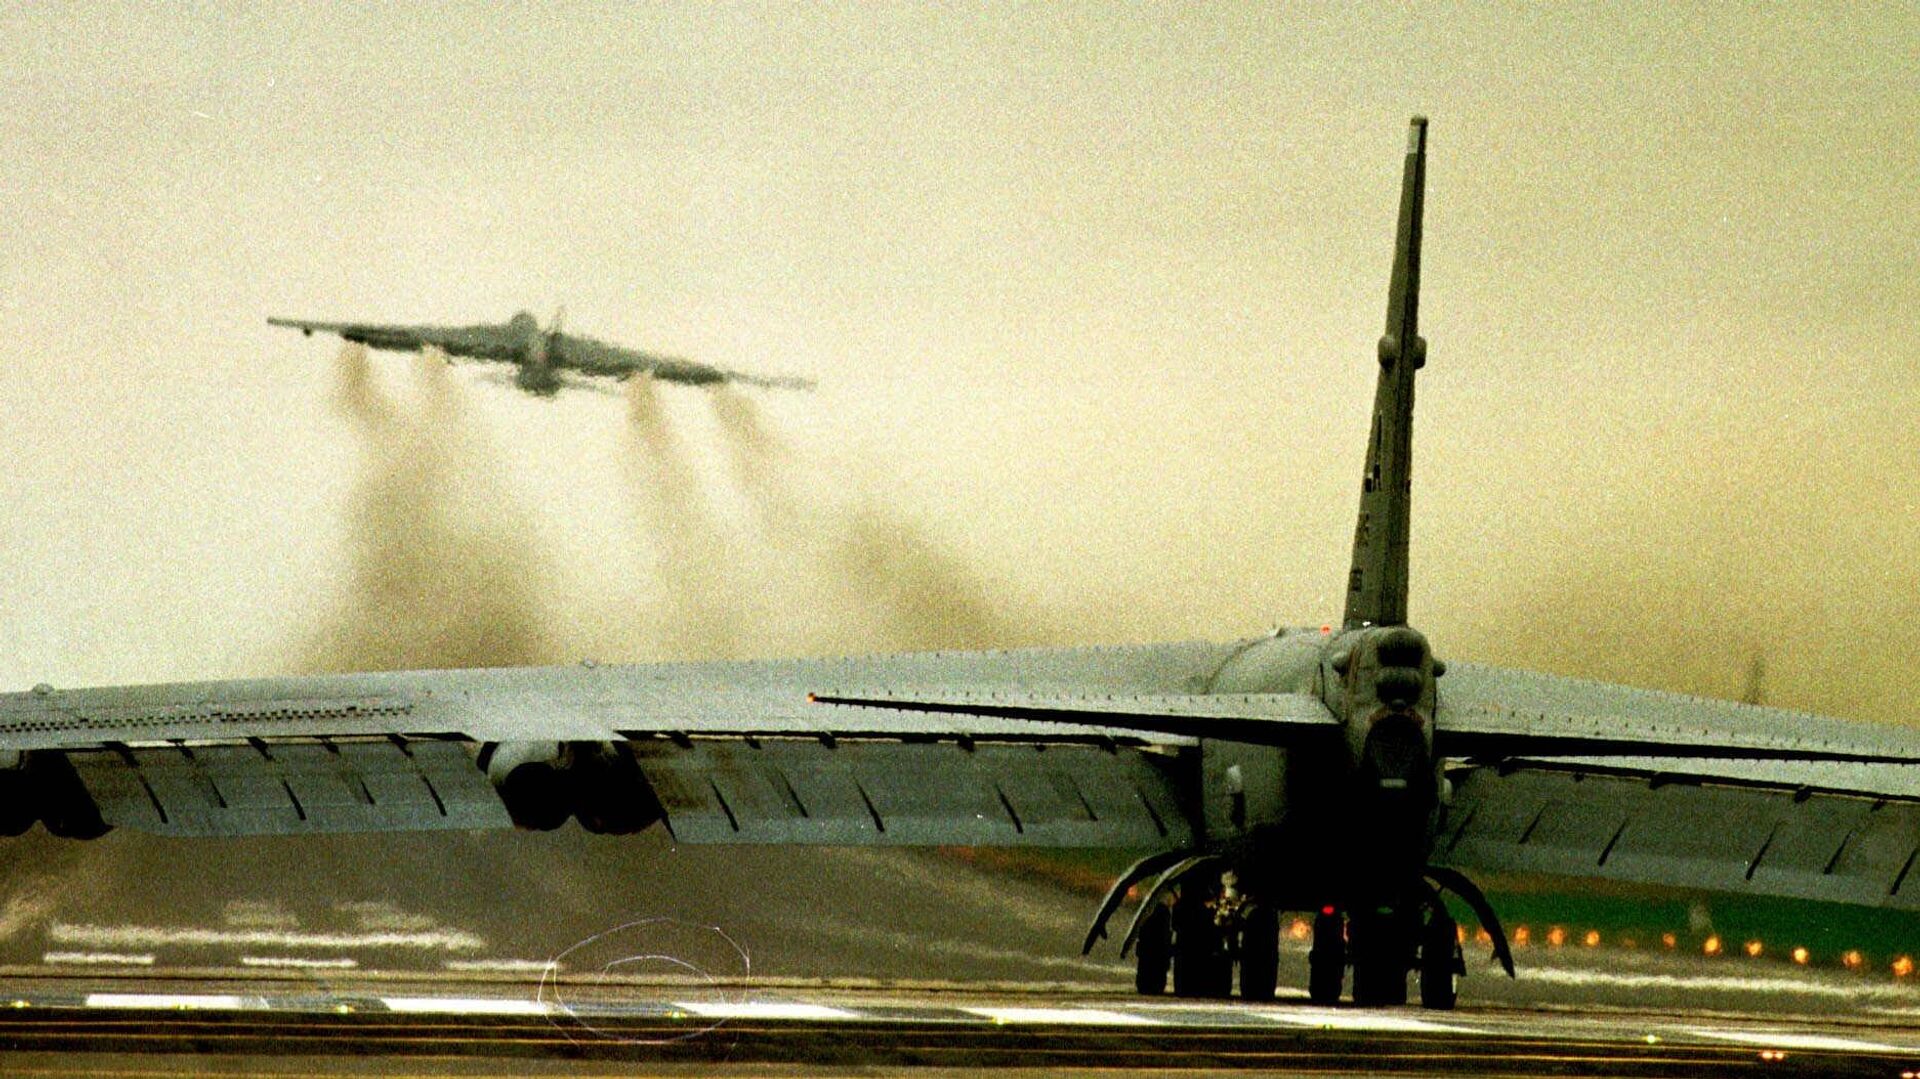 Бомбардировщик ВВС США В52 на авиабазе в Фэрфорде. 29 марта 1999 - РИА Новости, 1920, 24.03.2019